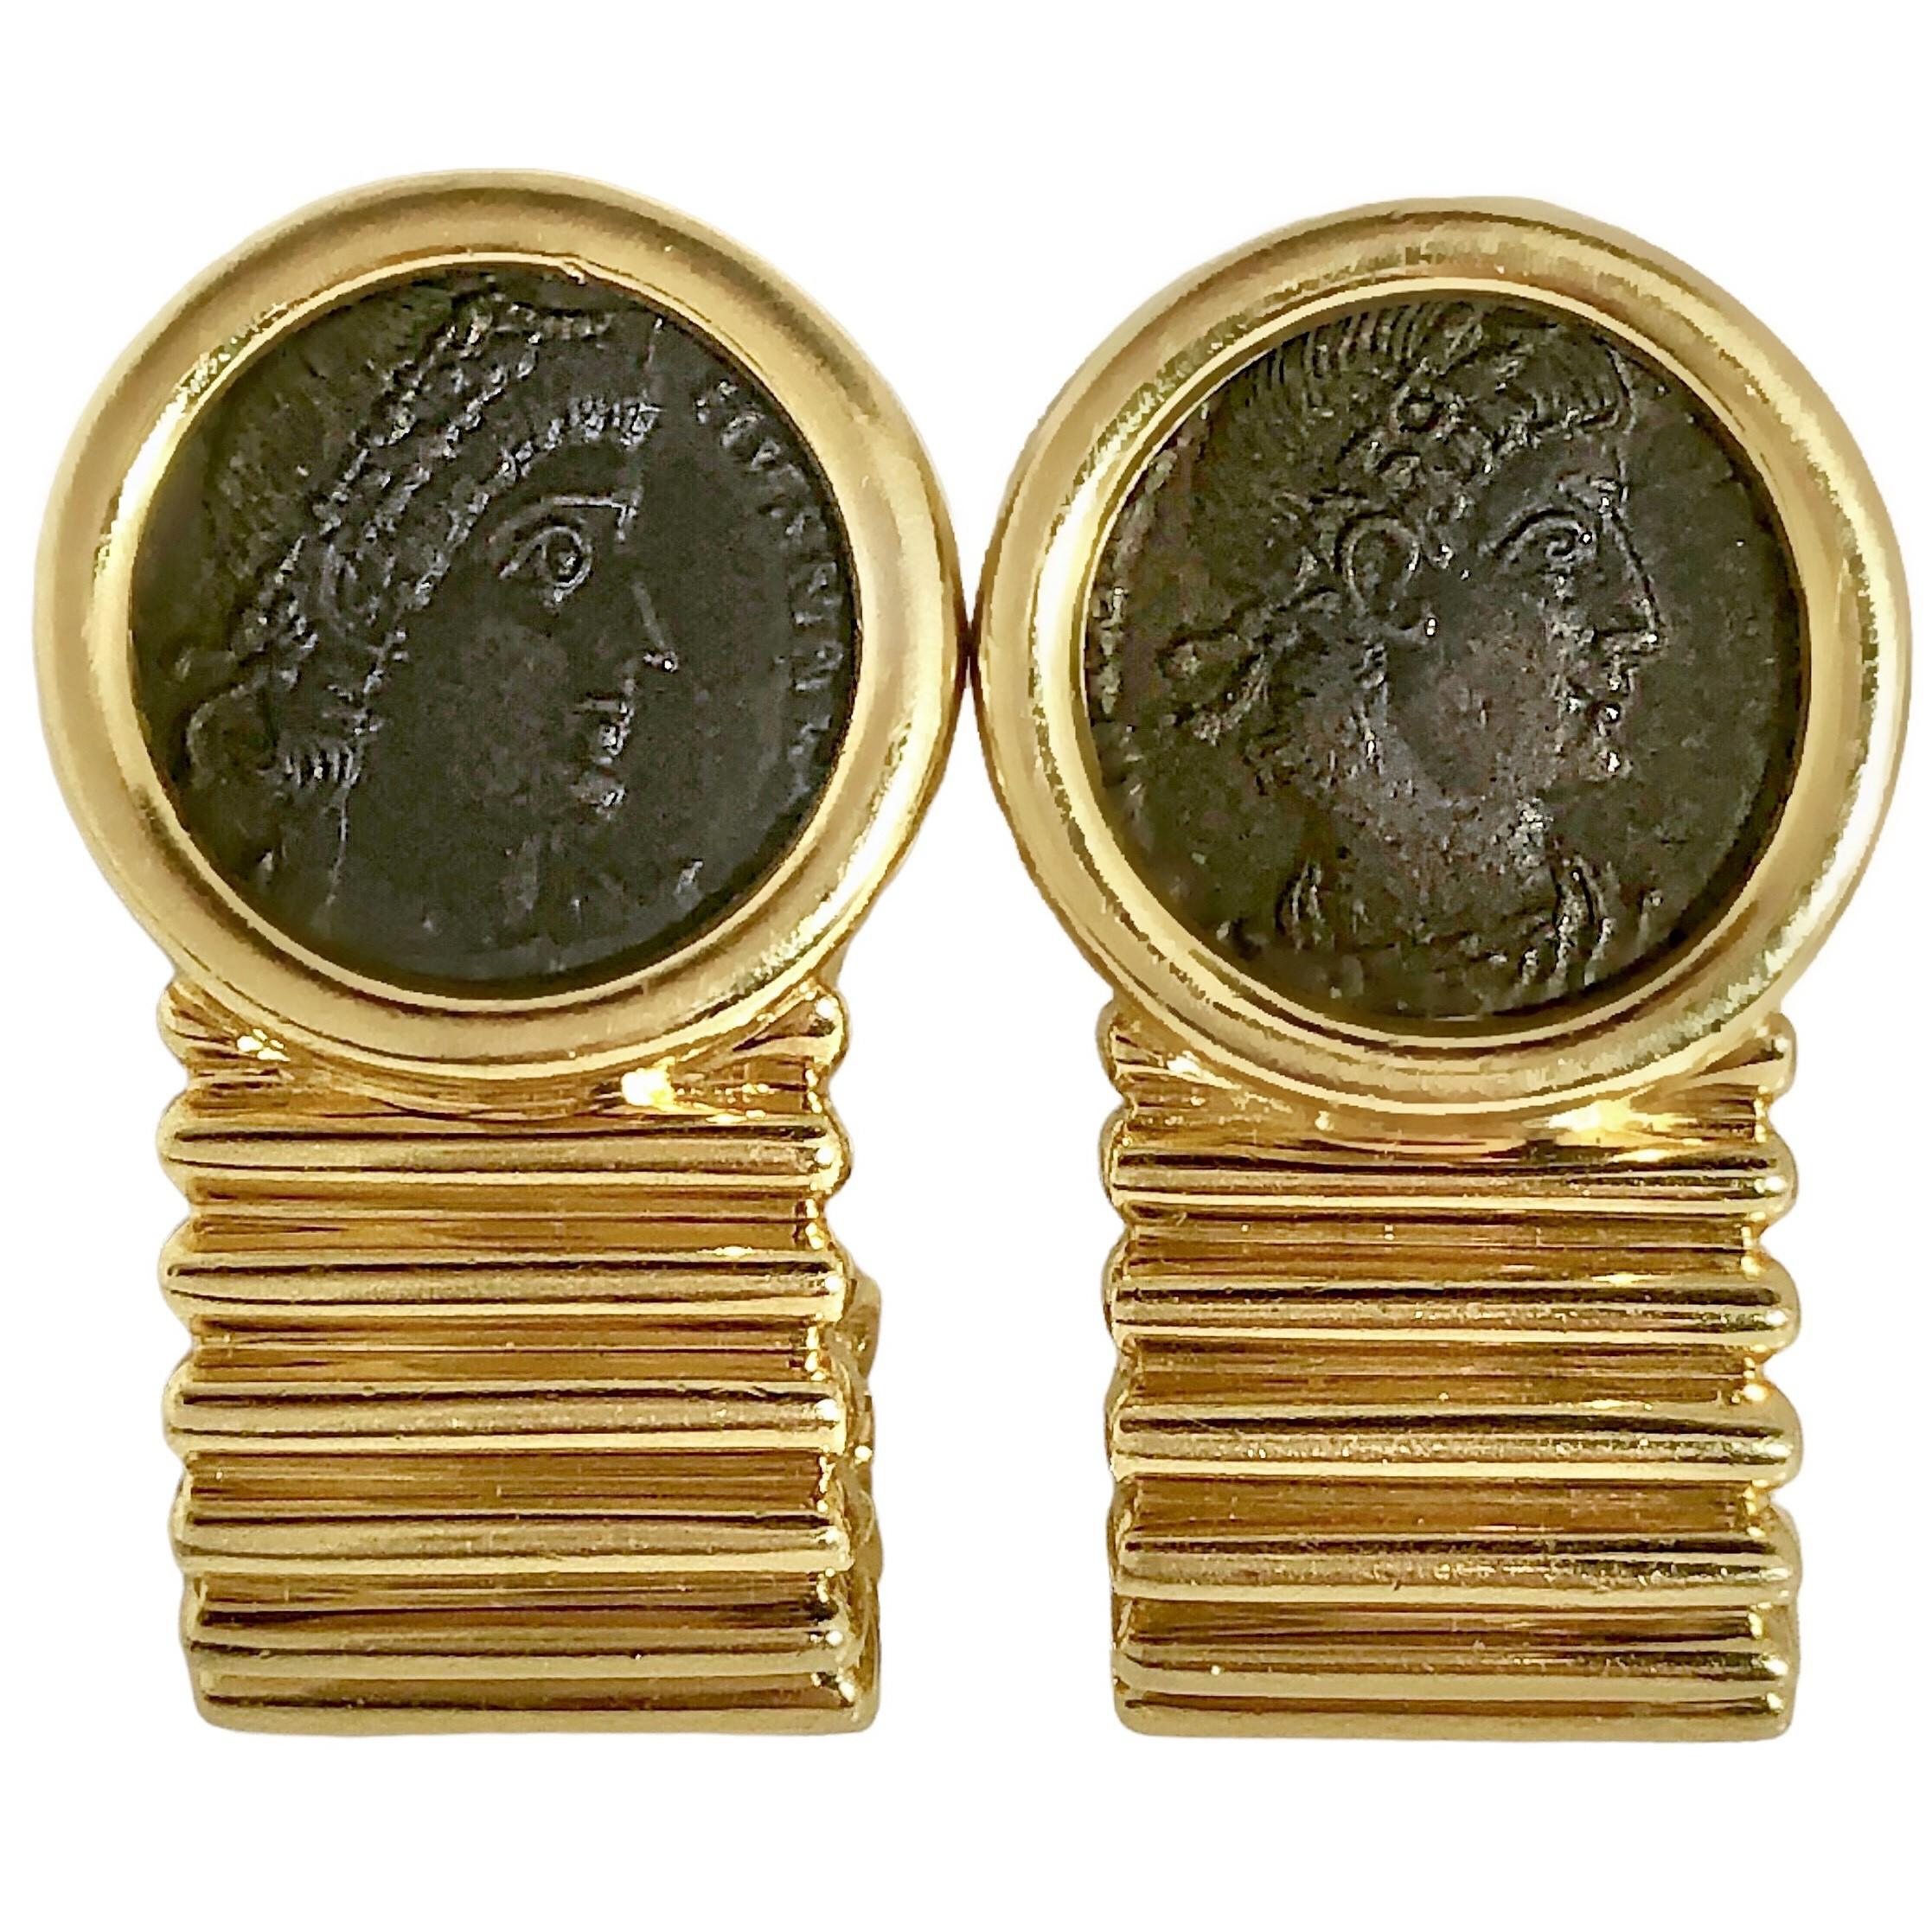 Diese hübschen Vintage-Ohrringe aus 18 Karat Gelbgold im Tubogas-Stil werden von zwei authentischen antiken Bronzemünzen gekrönt, die Constantinus den Großen aus dem Jahr 324 nach Christus darstellen. Unterhalb der Münzen in der Lünette befindet